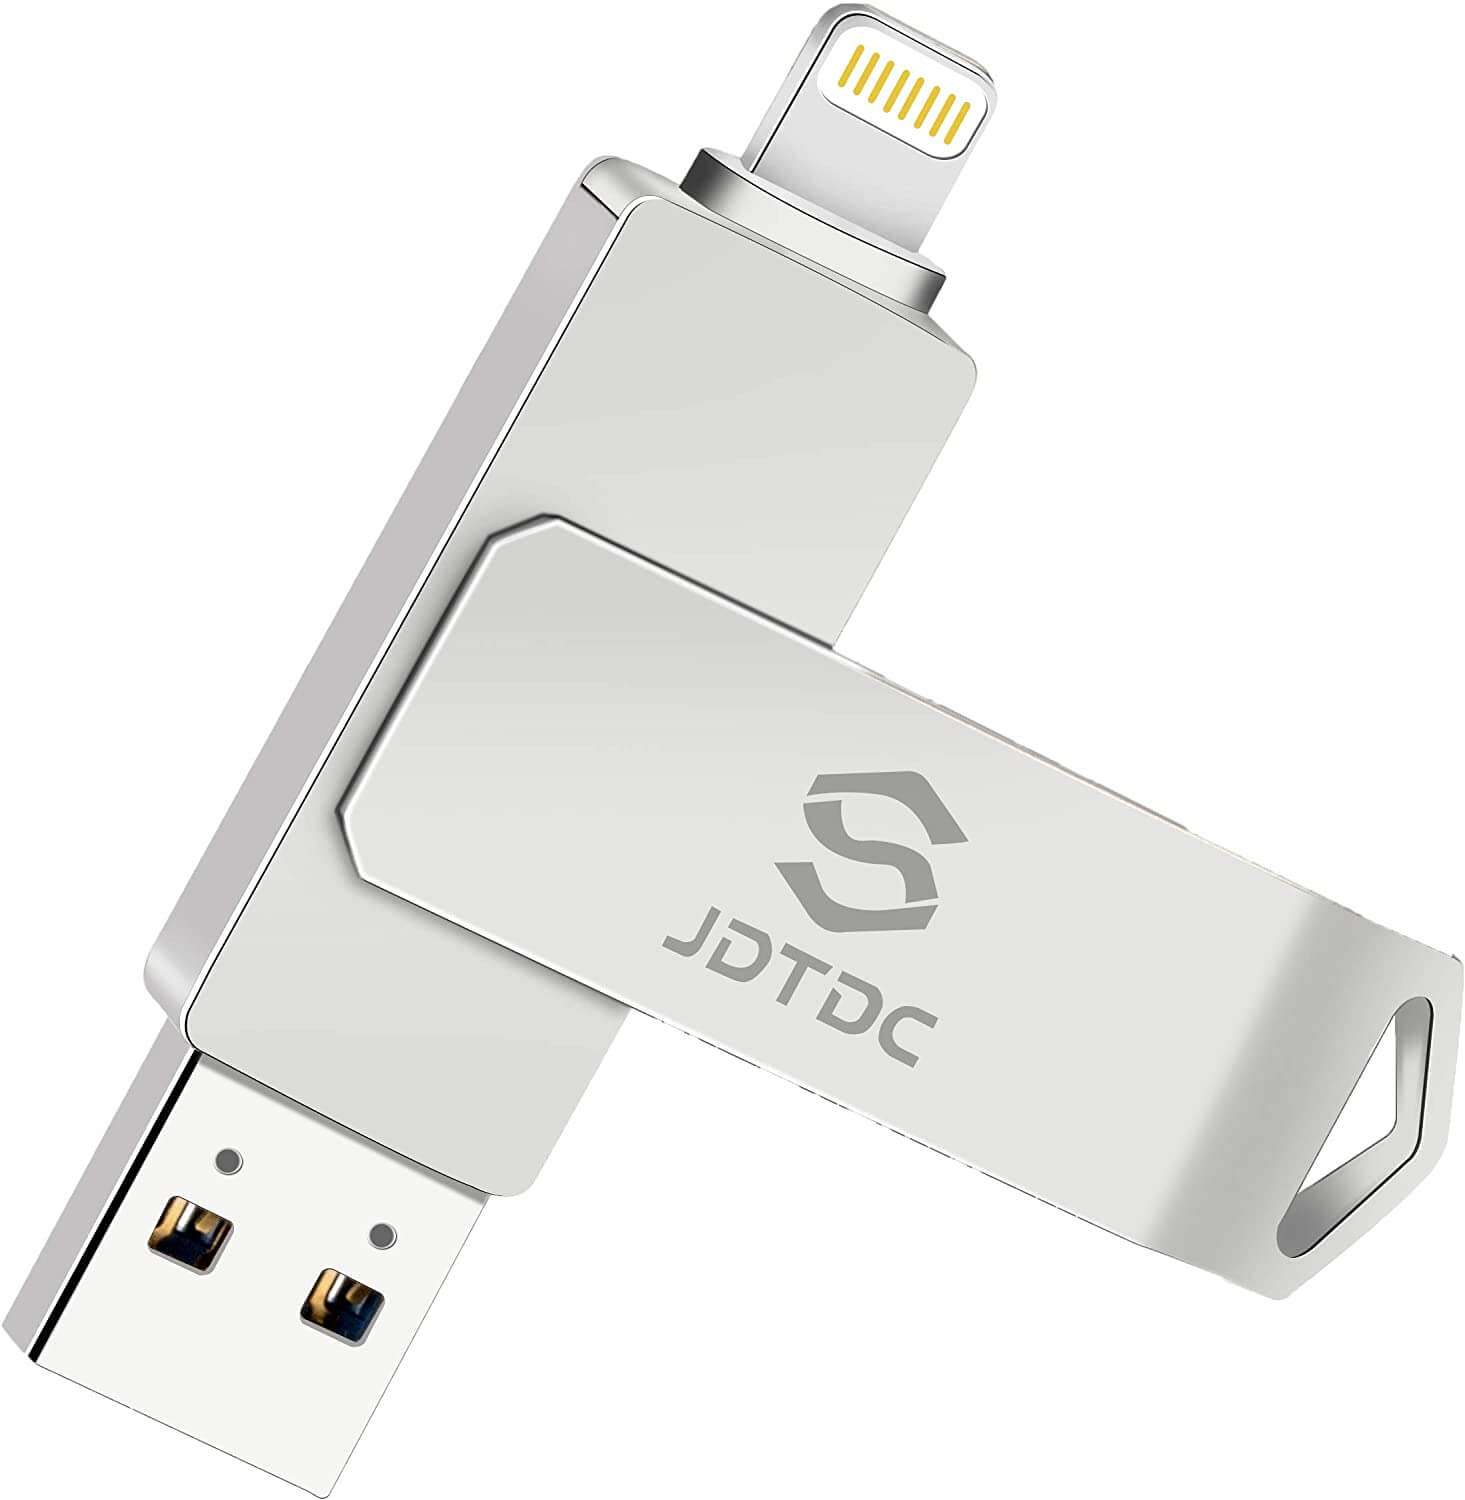 (Review) 5 USB cho iPhone tốt nhất: cắm trực tiếp để sao lưu dữ liệu